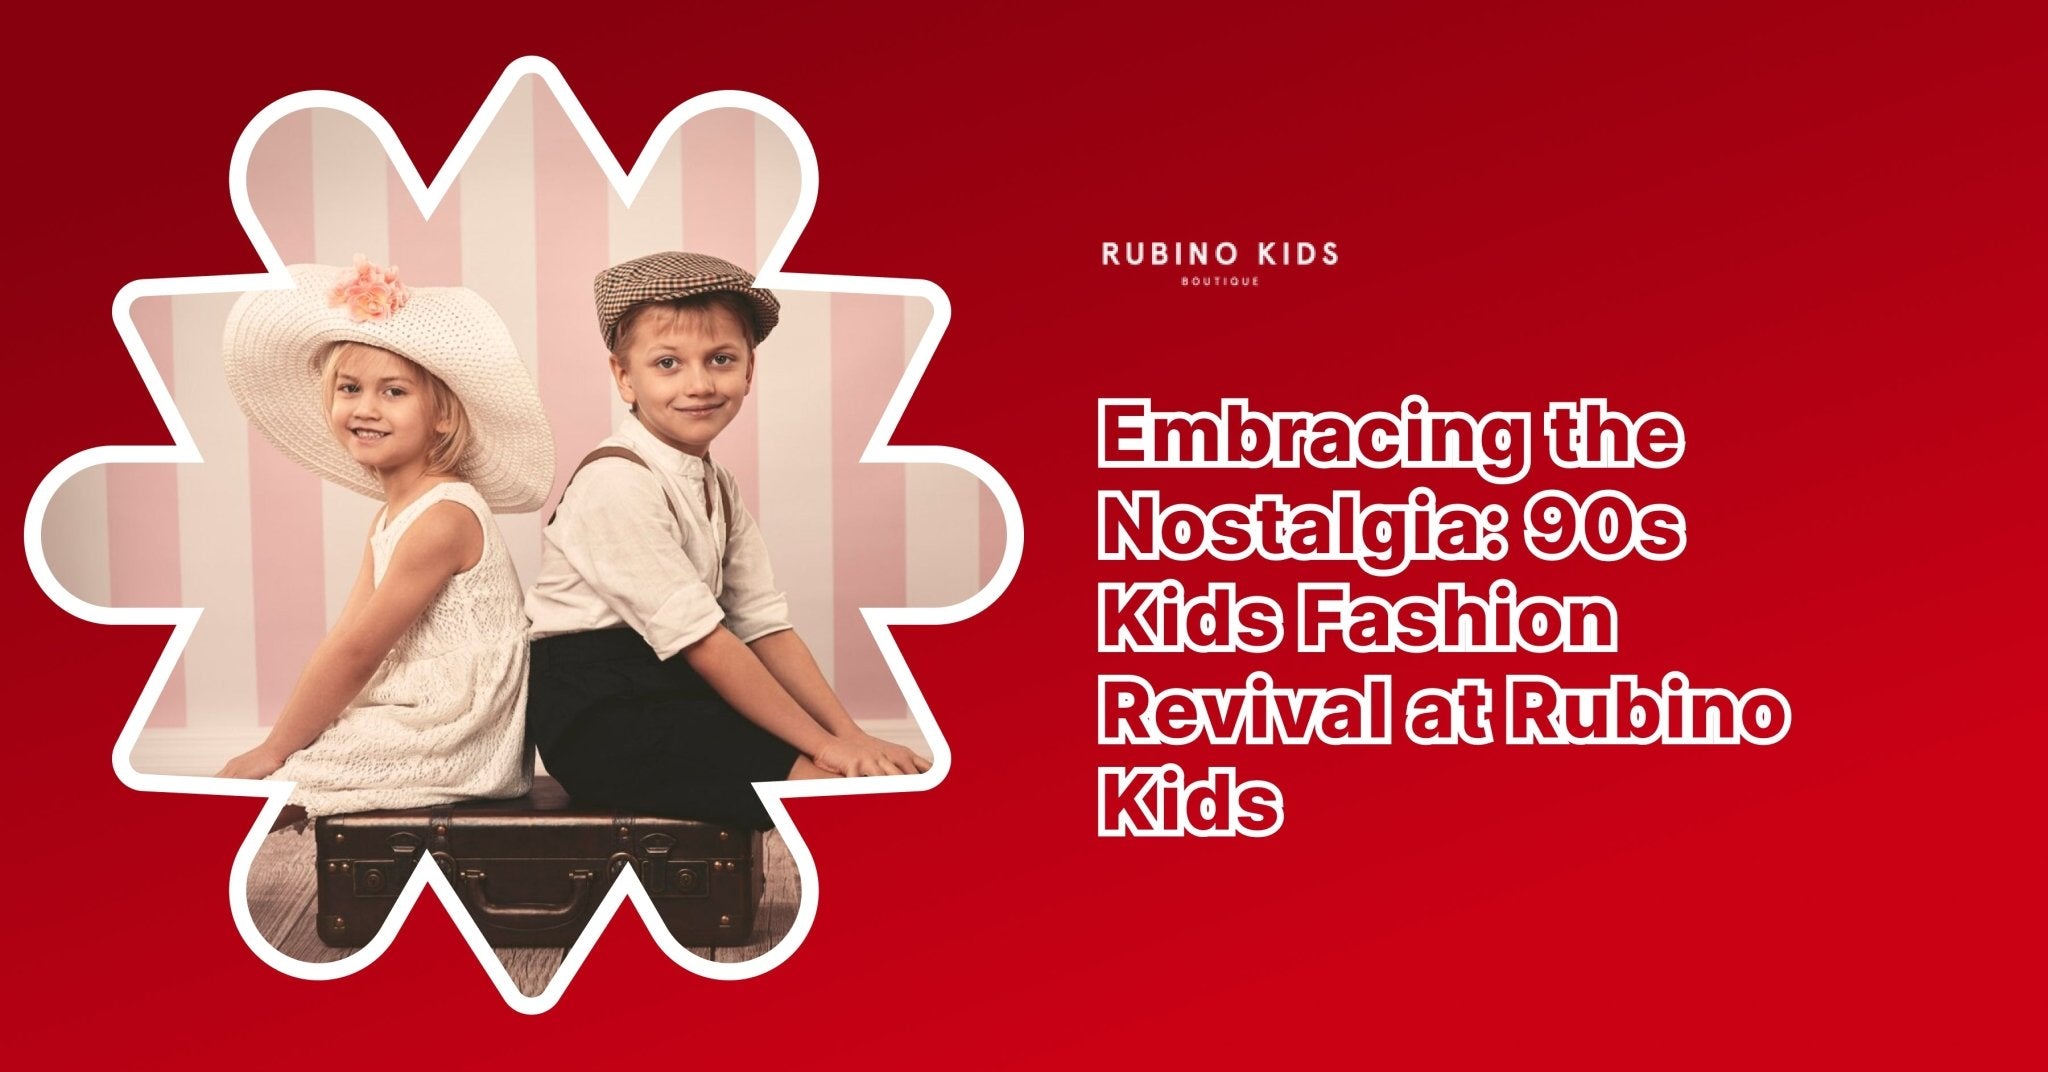 Riabbracciando la Nostalgia: la Rivincita della Moda Anni '90 da Rubino Kids - Rubino Kids